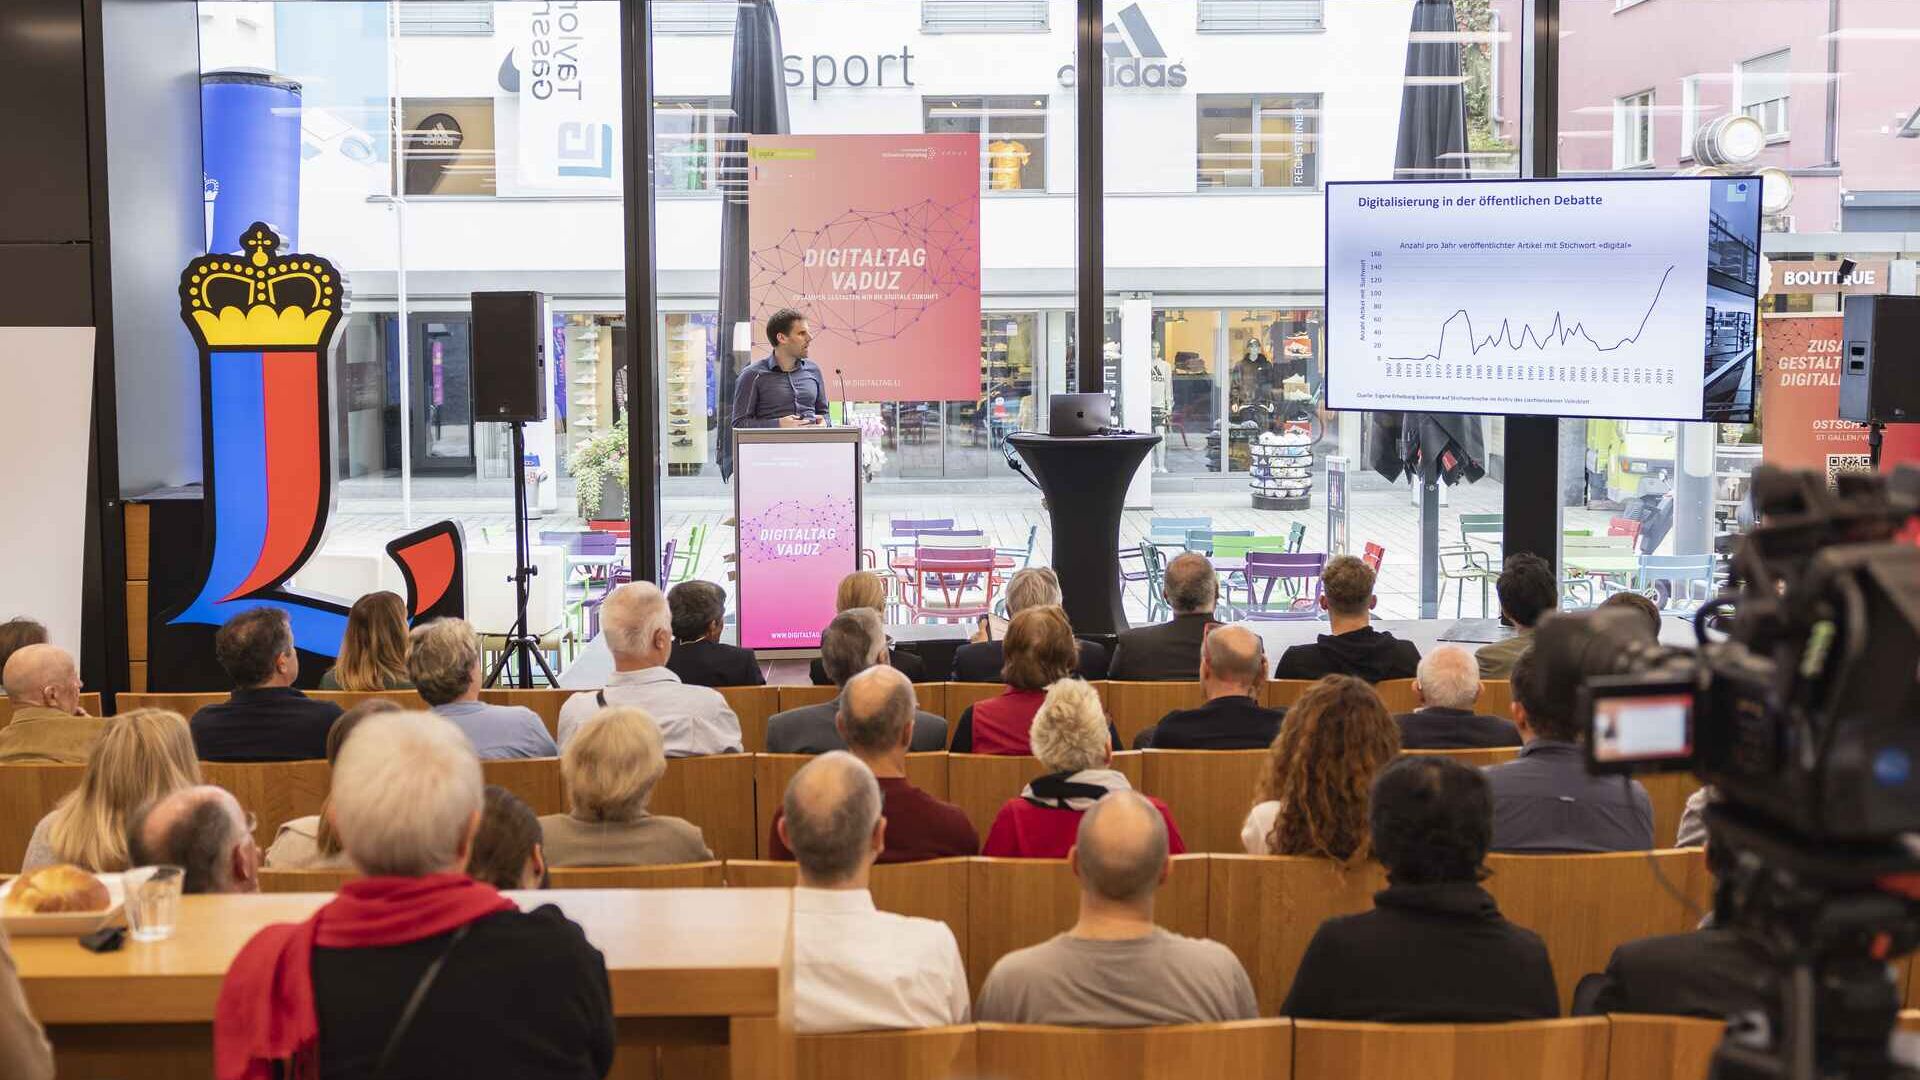 O "Digitaltag Vaduz" foi recebido pelo Kunstmuseum da capital do Principado de Liechtenstein no sábado, 15 de outubro de 2022